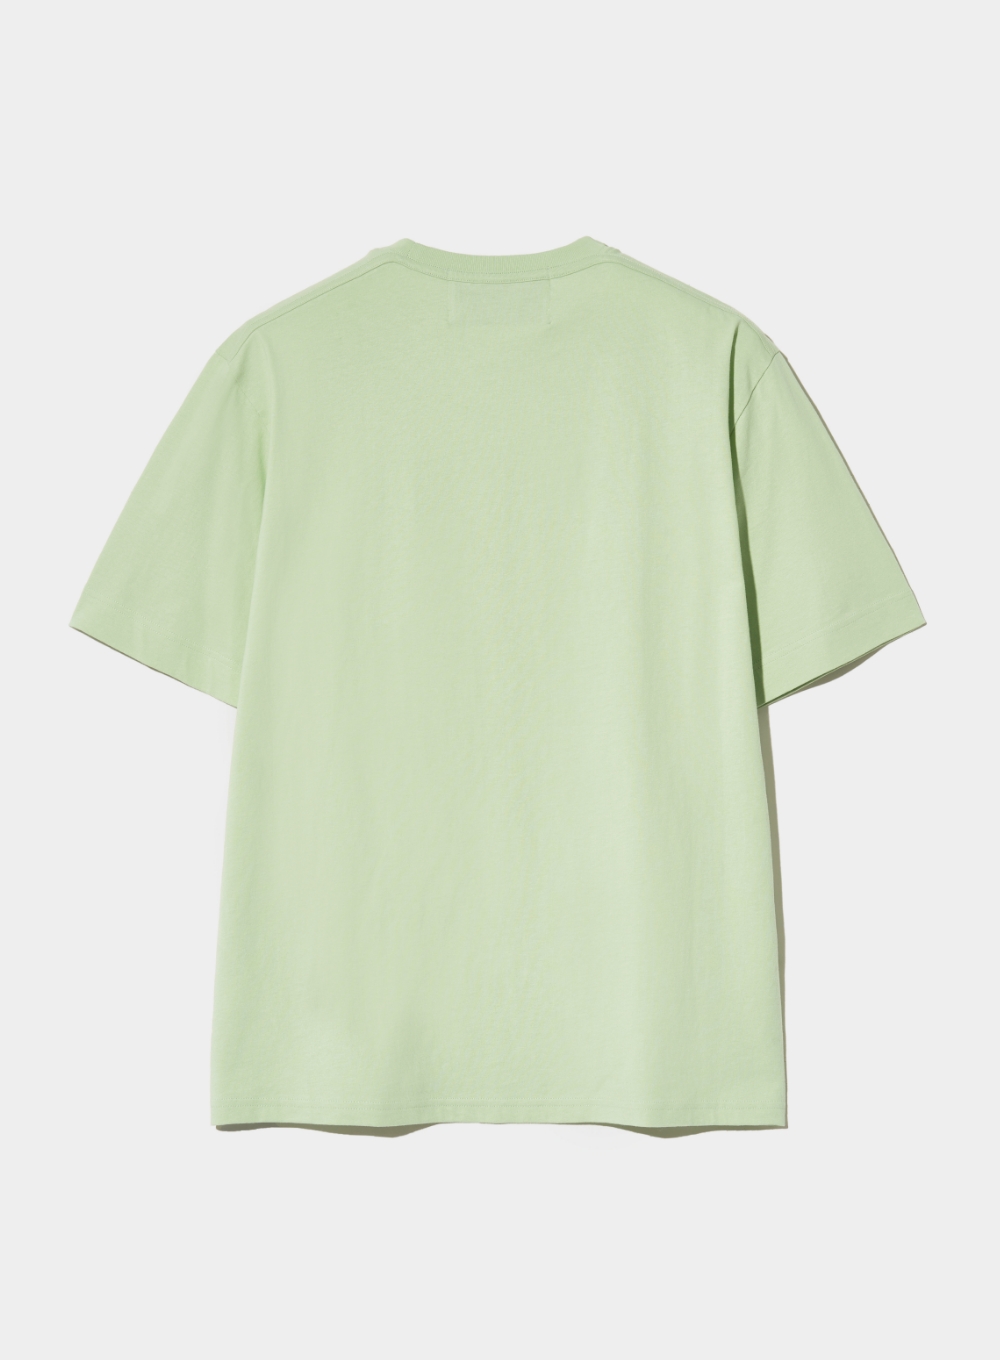 [5,000원 쿠폰] Banana Tree Graphic T-Shirt - Celadon Mint